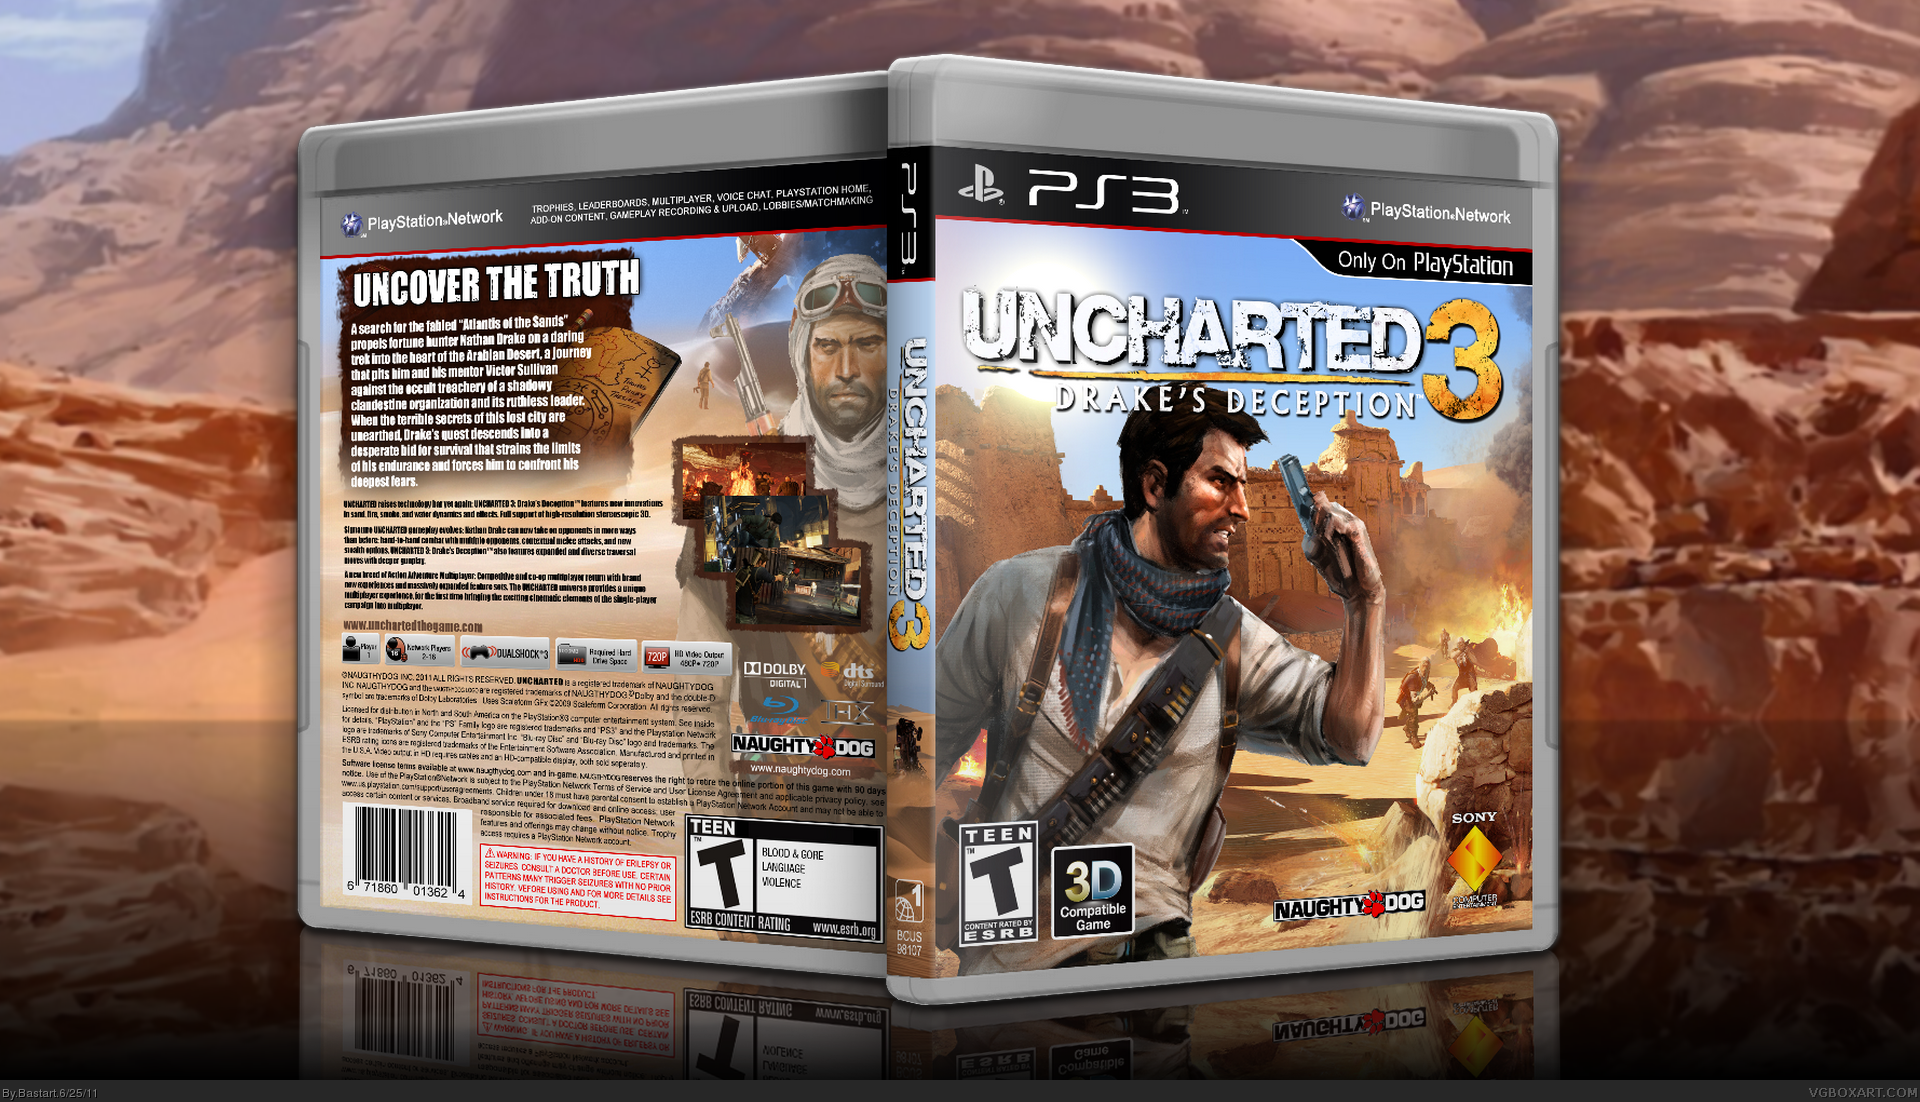 Анчартед на картах не. Uncharted 3 ps3 обложка. Uncharted 3: Drake's Deception карта. Uncharted 3 Drake's Deception ps3 обложка. Uncharted 3 карта.